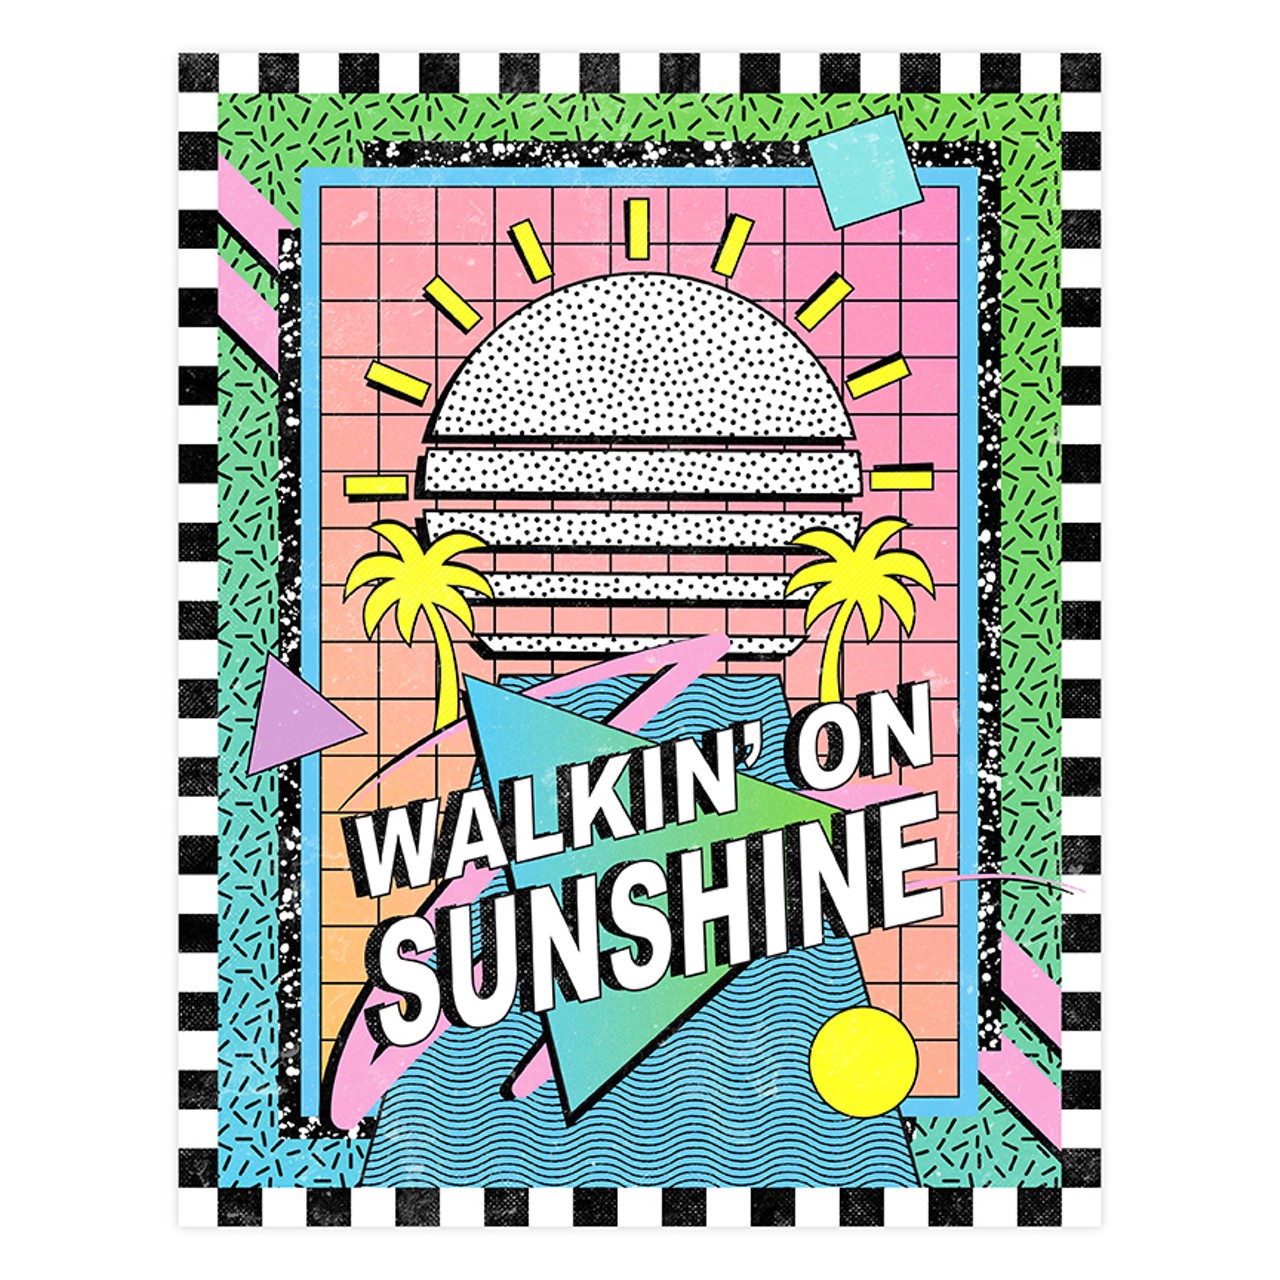 "Walkin' On Sunshine" by Acid Winzip